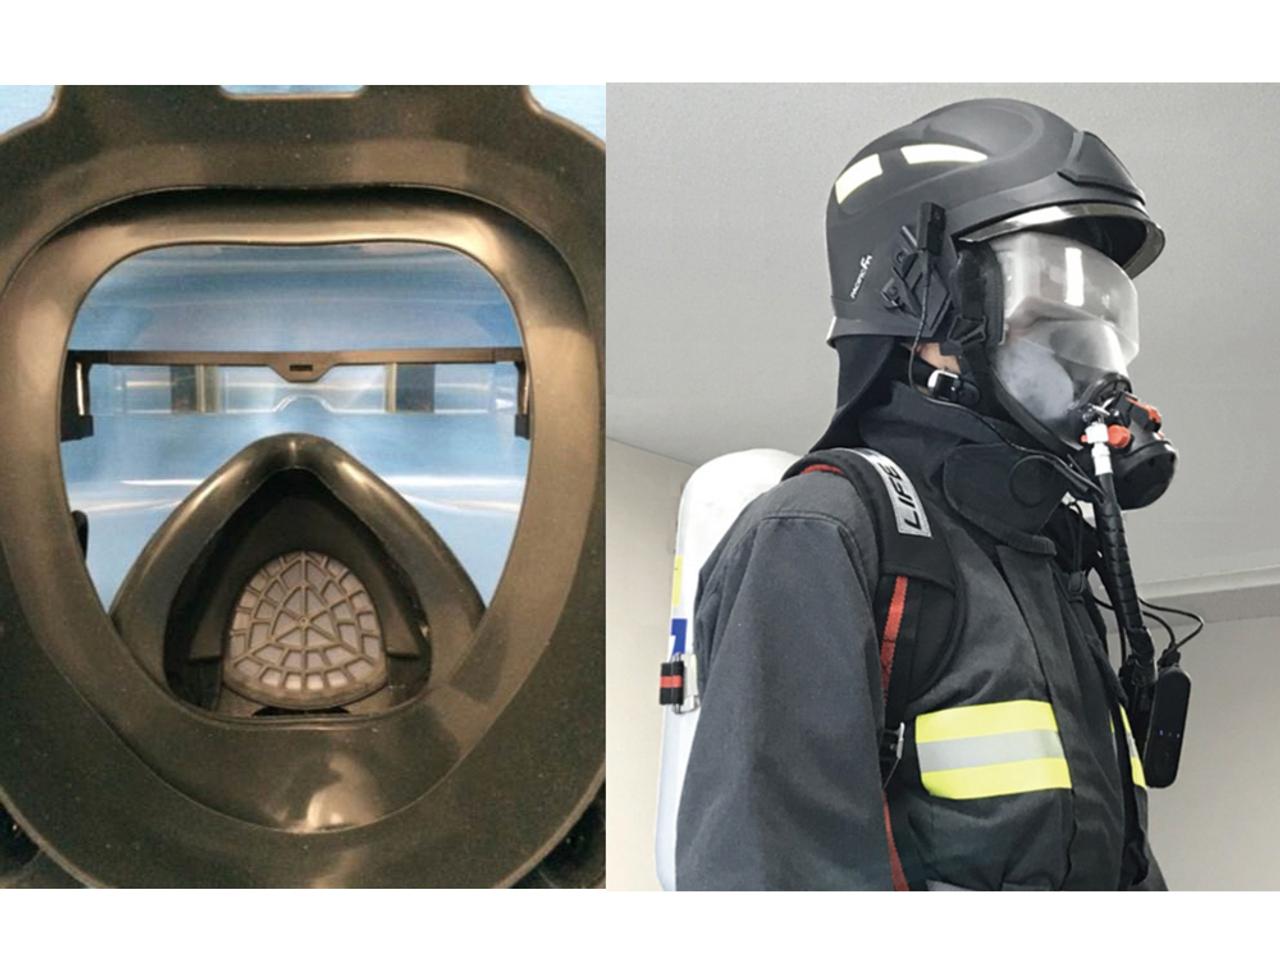 スマートグラス内蔵の消防救助用マスク、もはやSF級のかっこよさにシビれる…